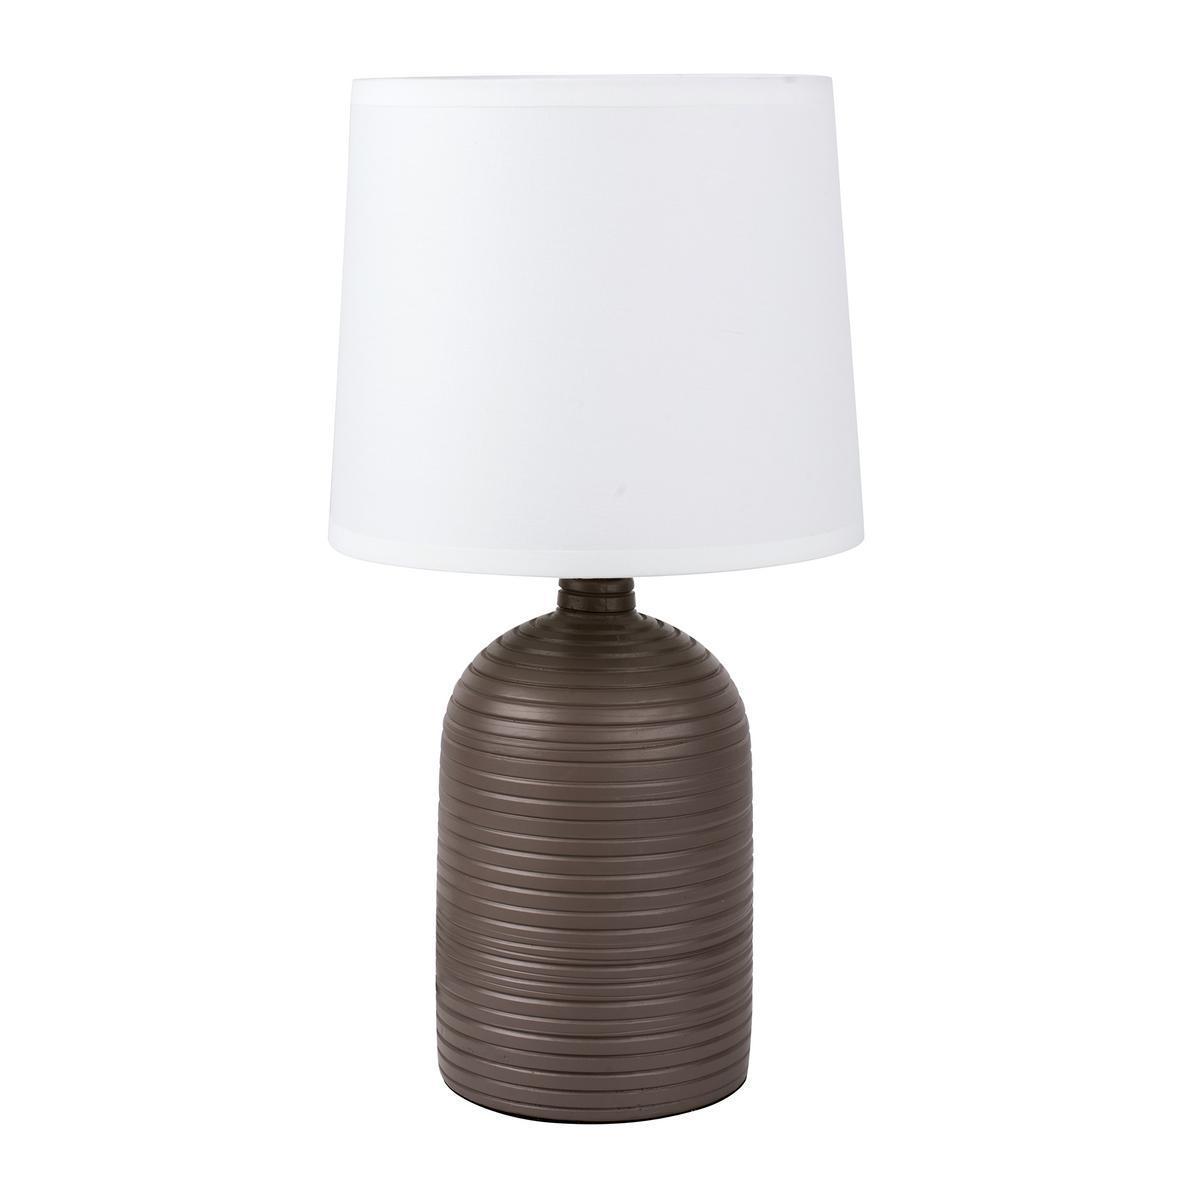 Lampe - Céramique - Ø 20 x H 36,5 cm - Beige, blanc ou taupe